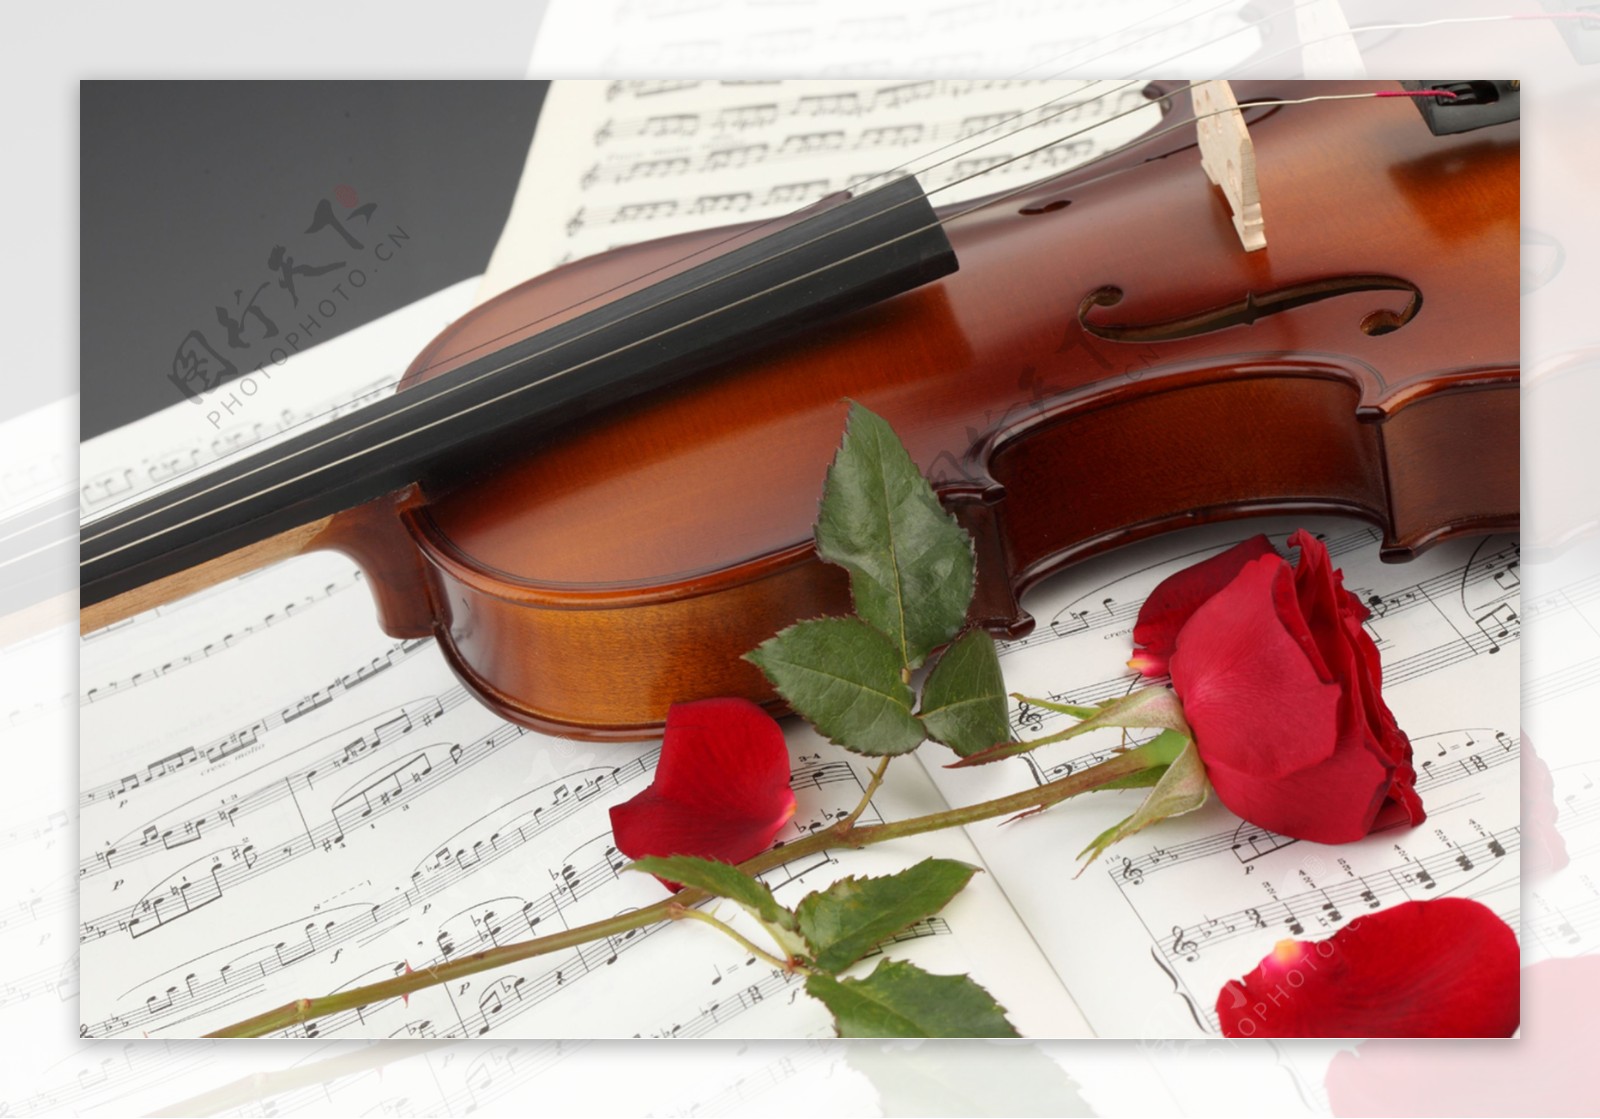 小提琴与红玫瑰花图片